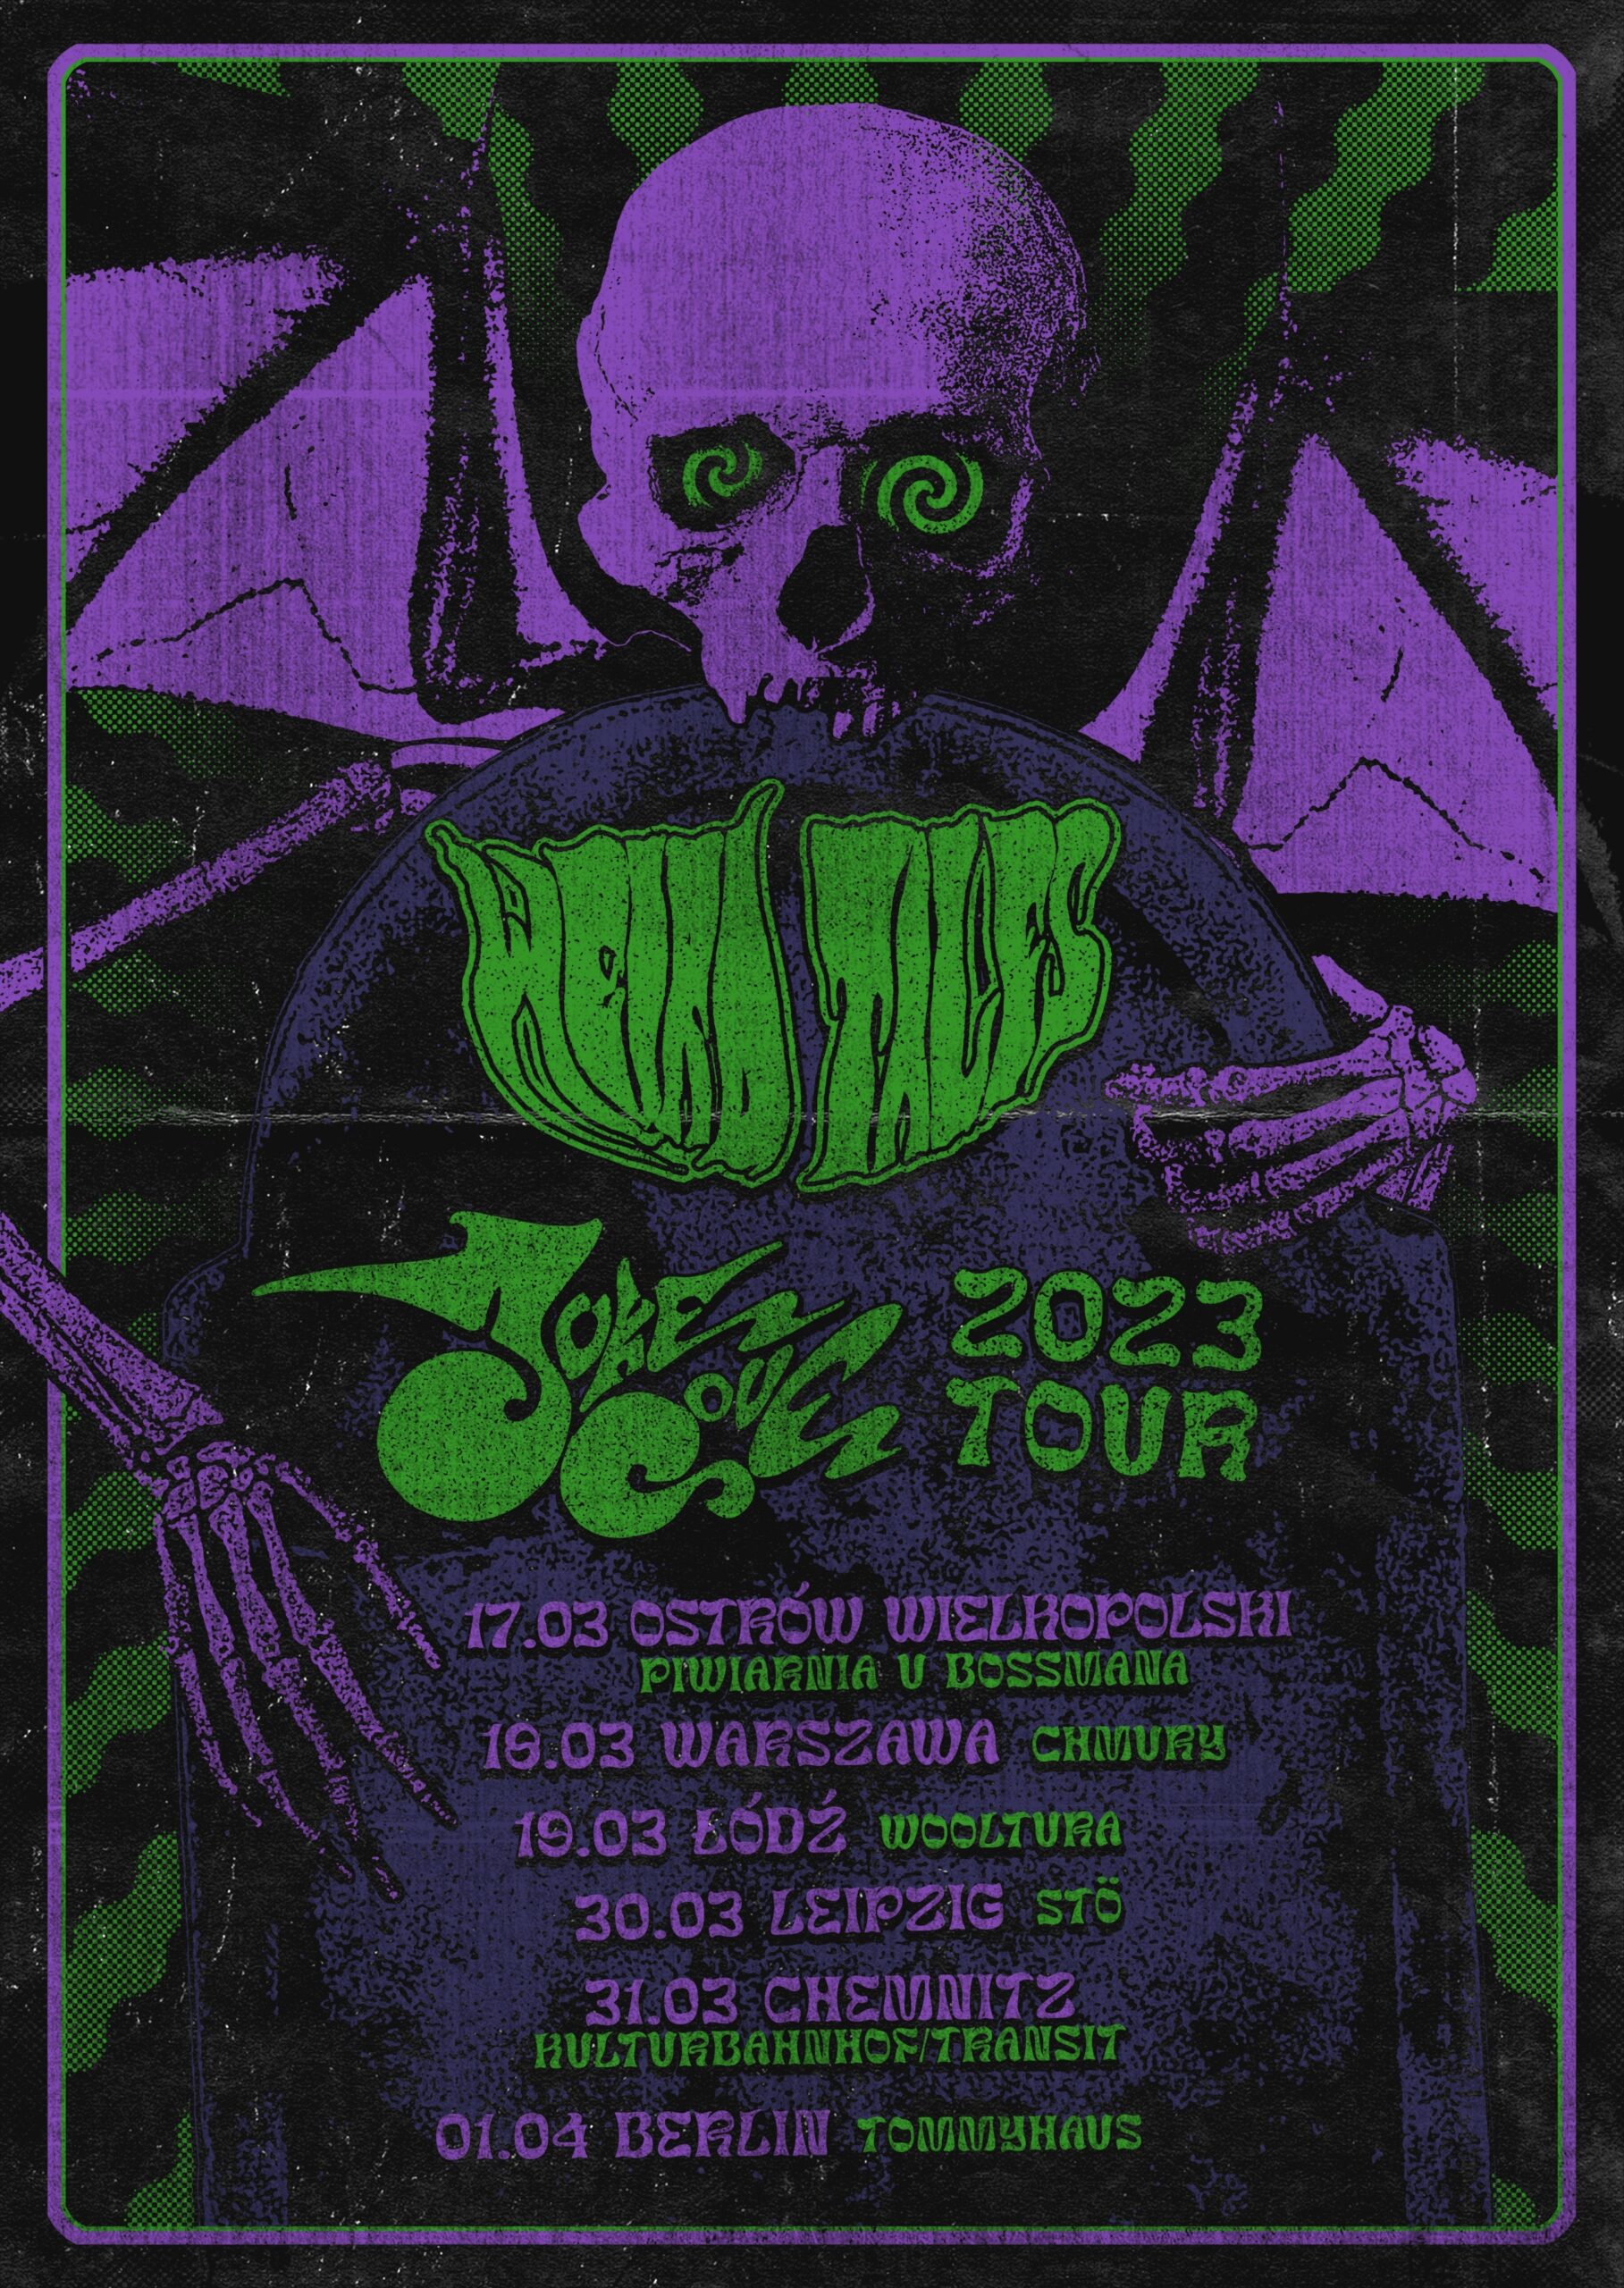 Weird Tales 2023 tour poster